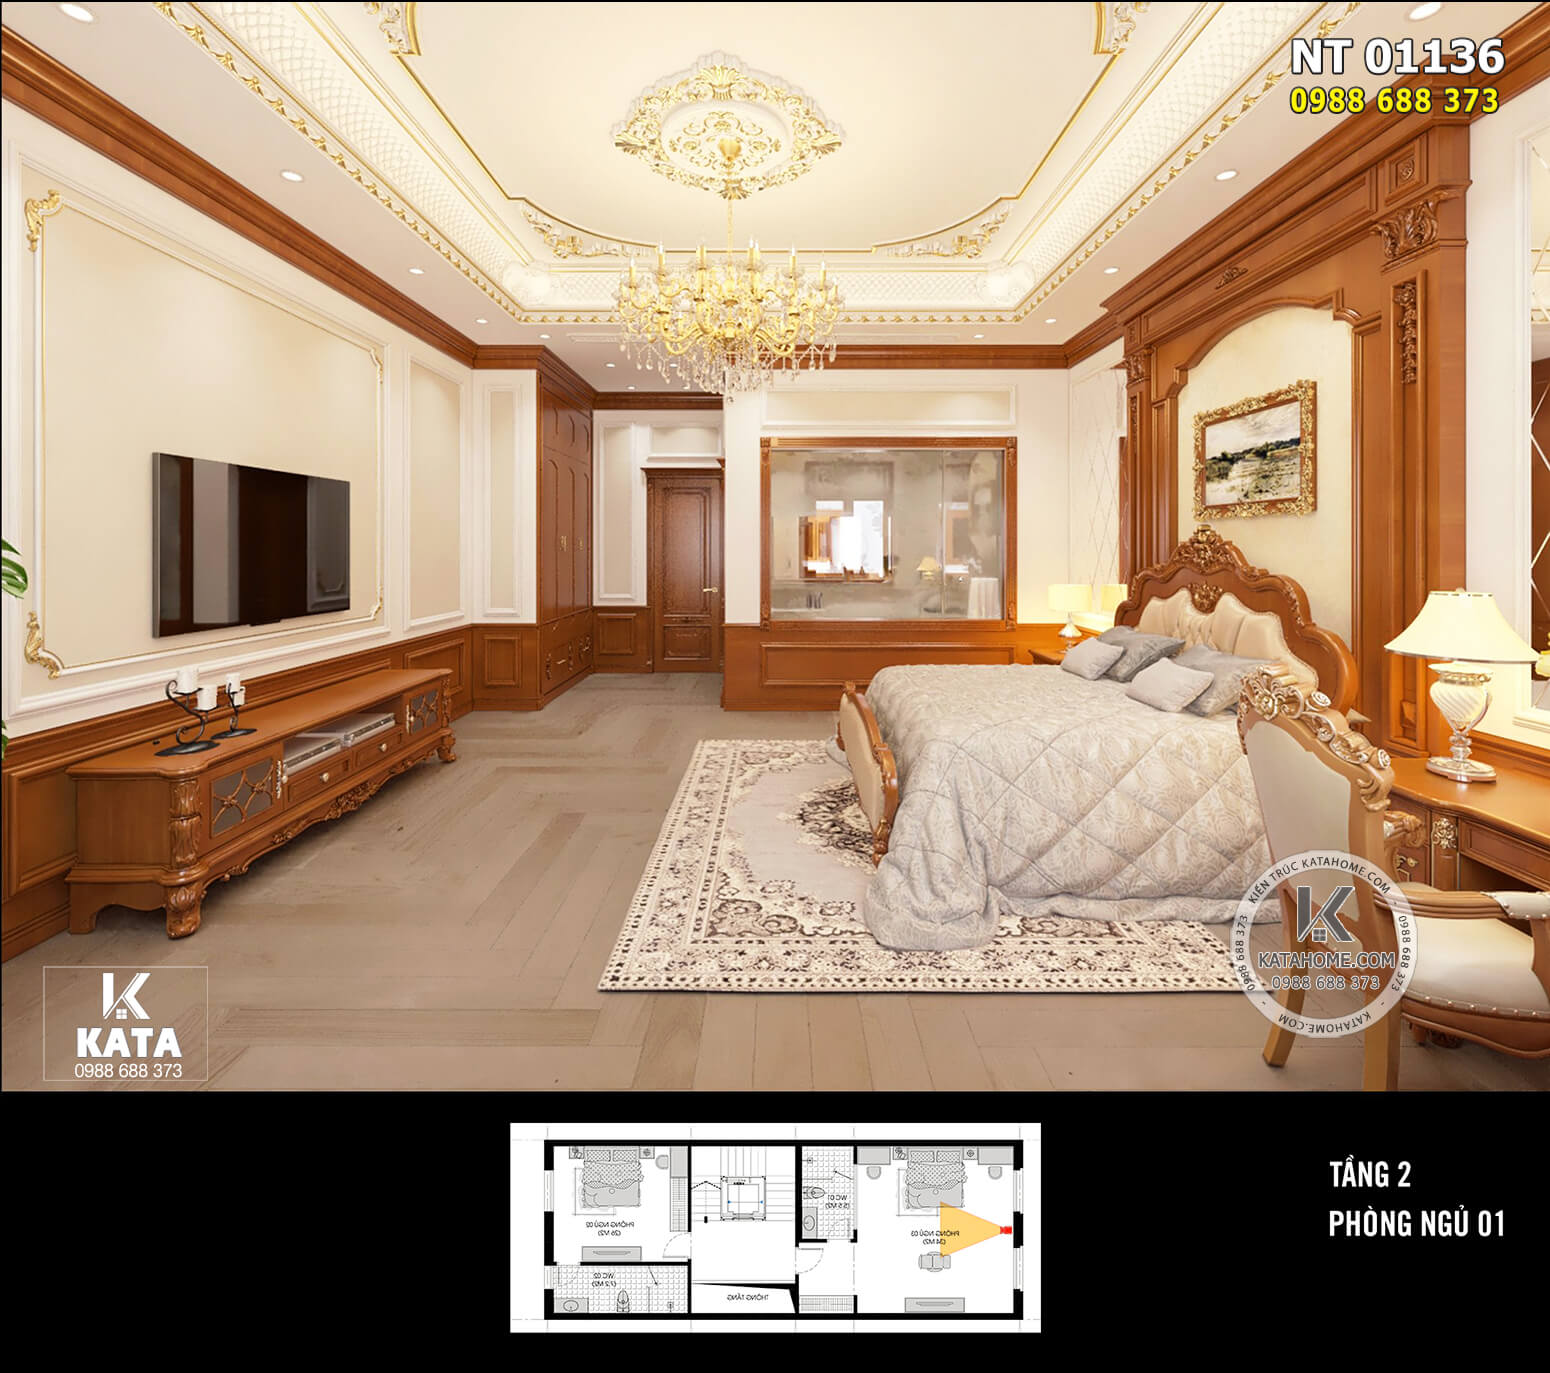 Không gian nội thất phòng ngủ được thiết kế rộng rãi, đầy đủ tiện nghi